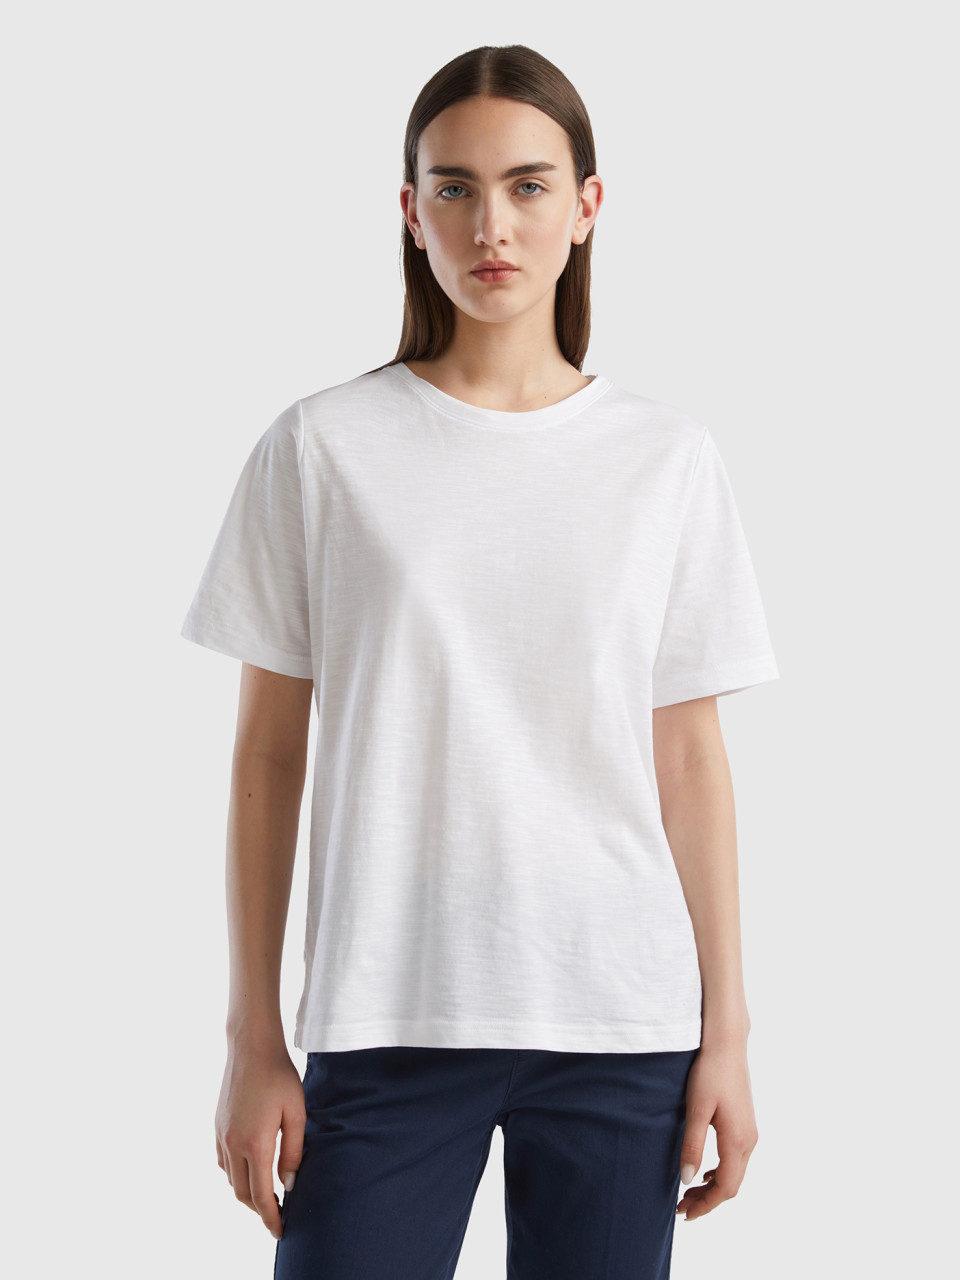 Benetton, Crew Neck T-shirt In Slub Cotton, White, Women